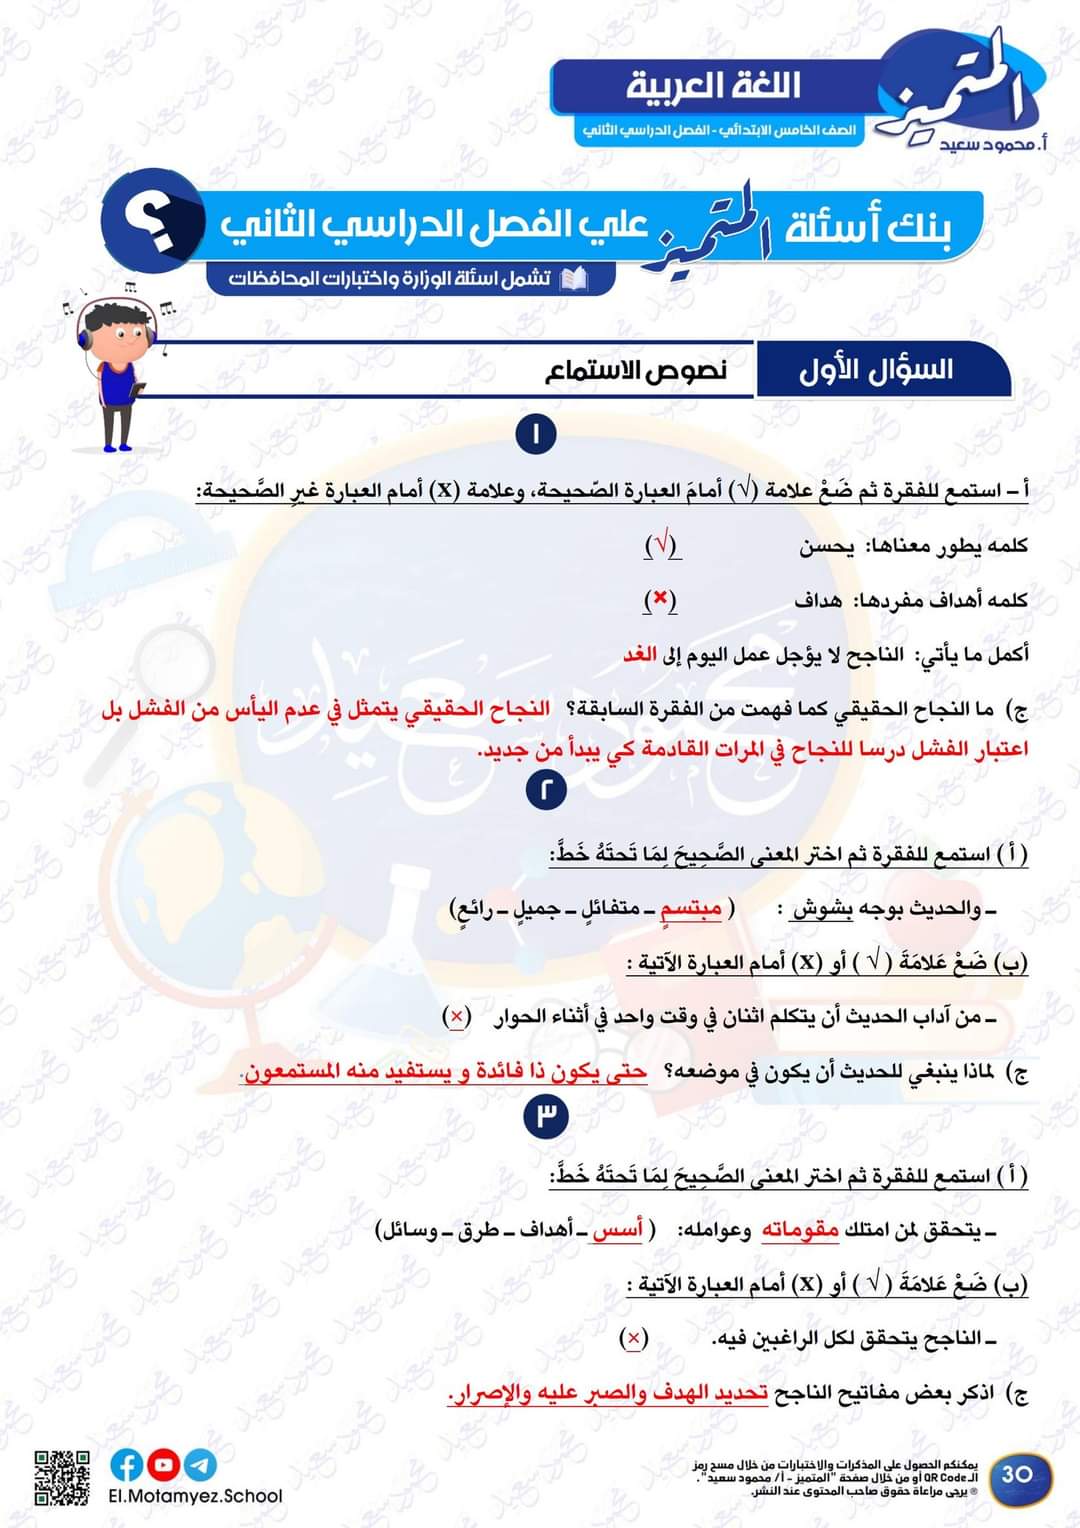 مراجعة المتميز النهائية في اللغة العربية الصف الخامس الابتدائي الترم الثاني بالاجابات - تحميل مذكرات المتميز